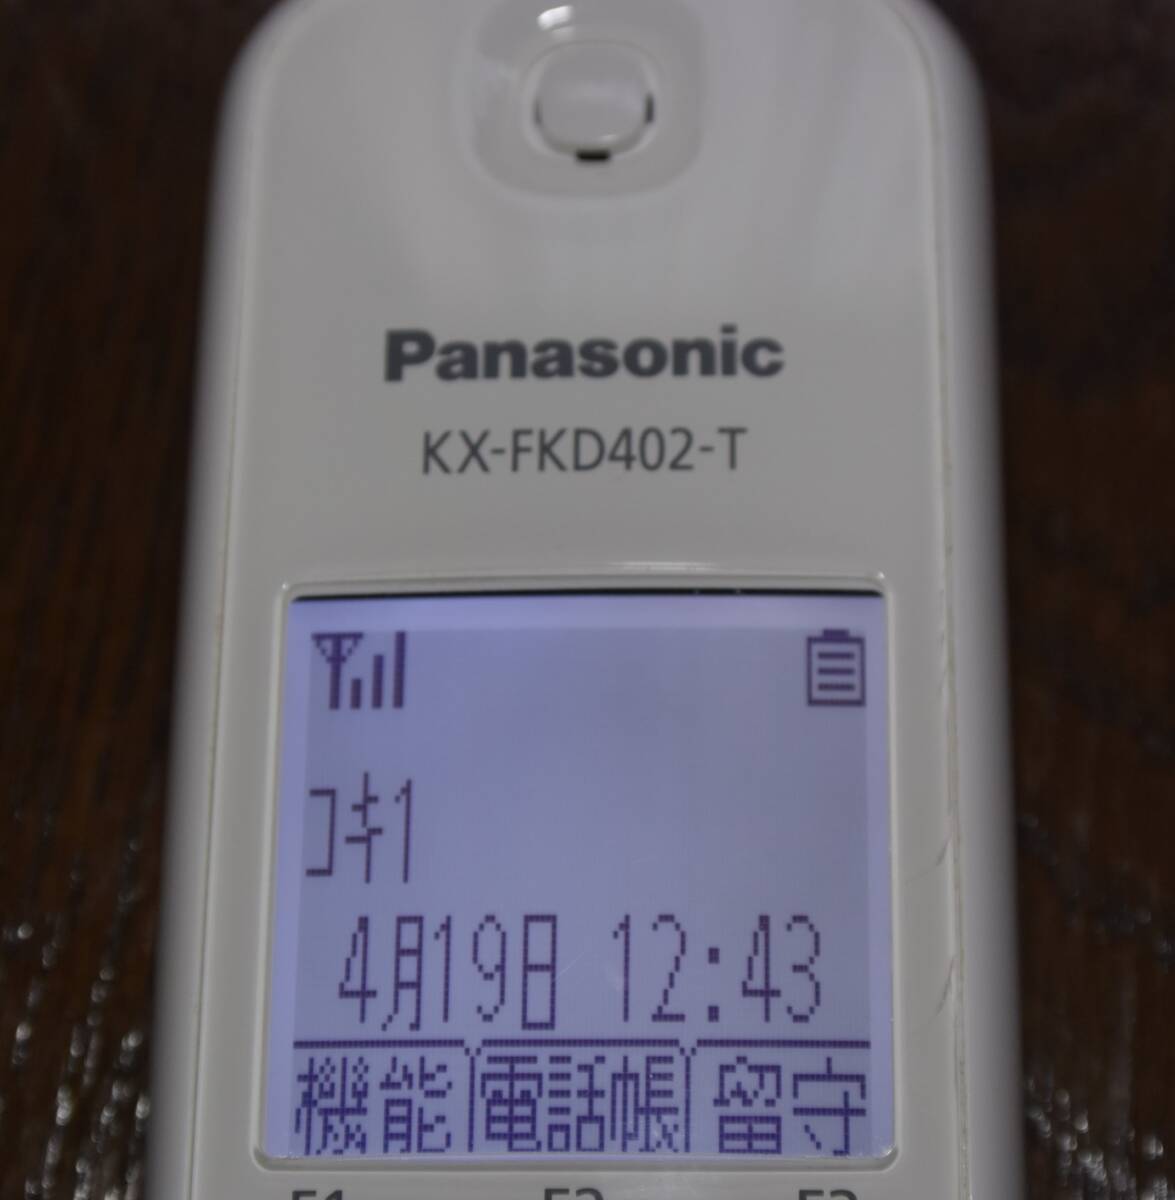 Panasonic Panasonic cordless phone VE-GDS01DL KX-FKD402-T